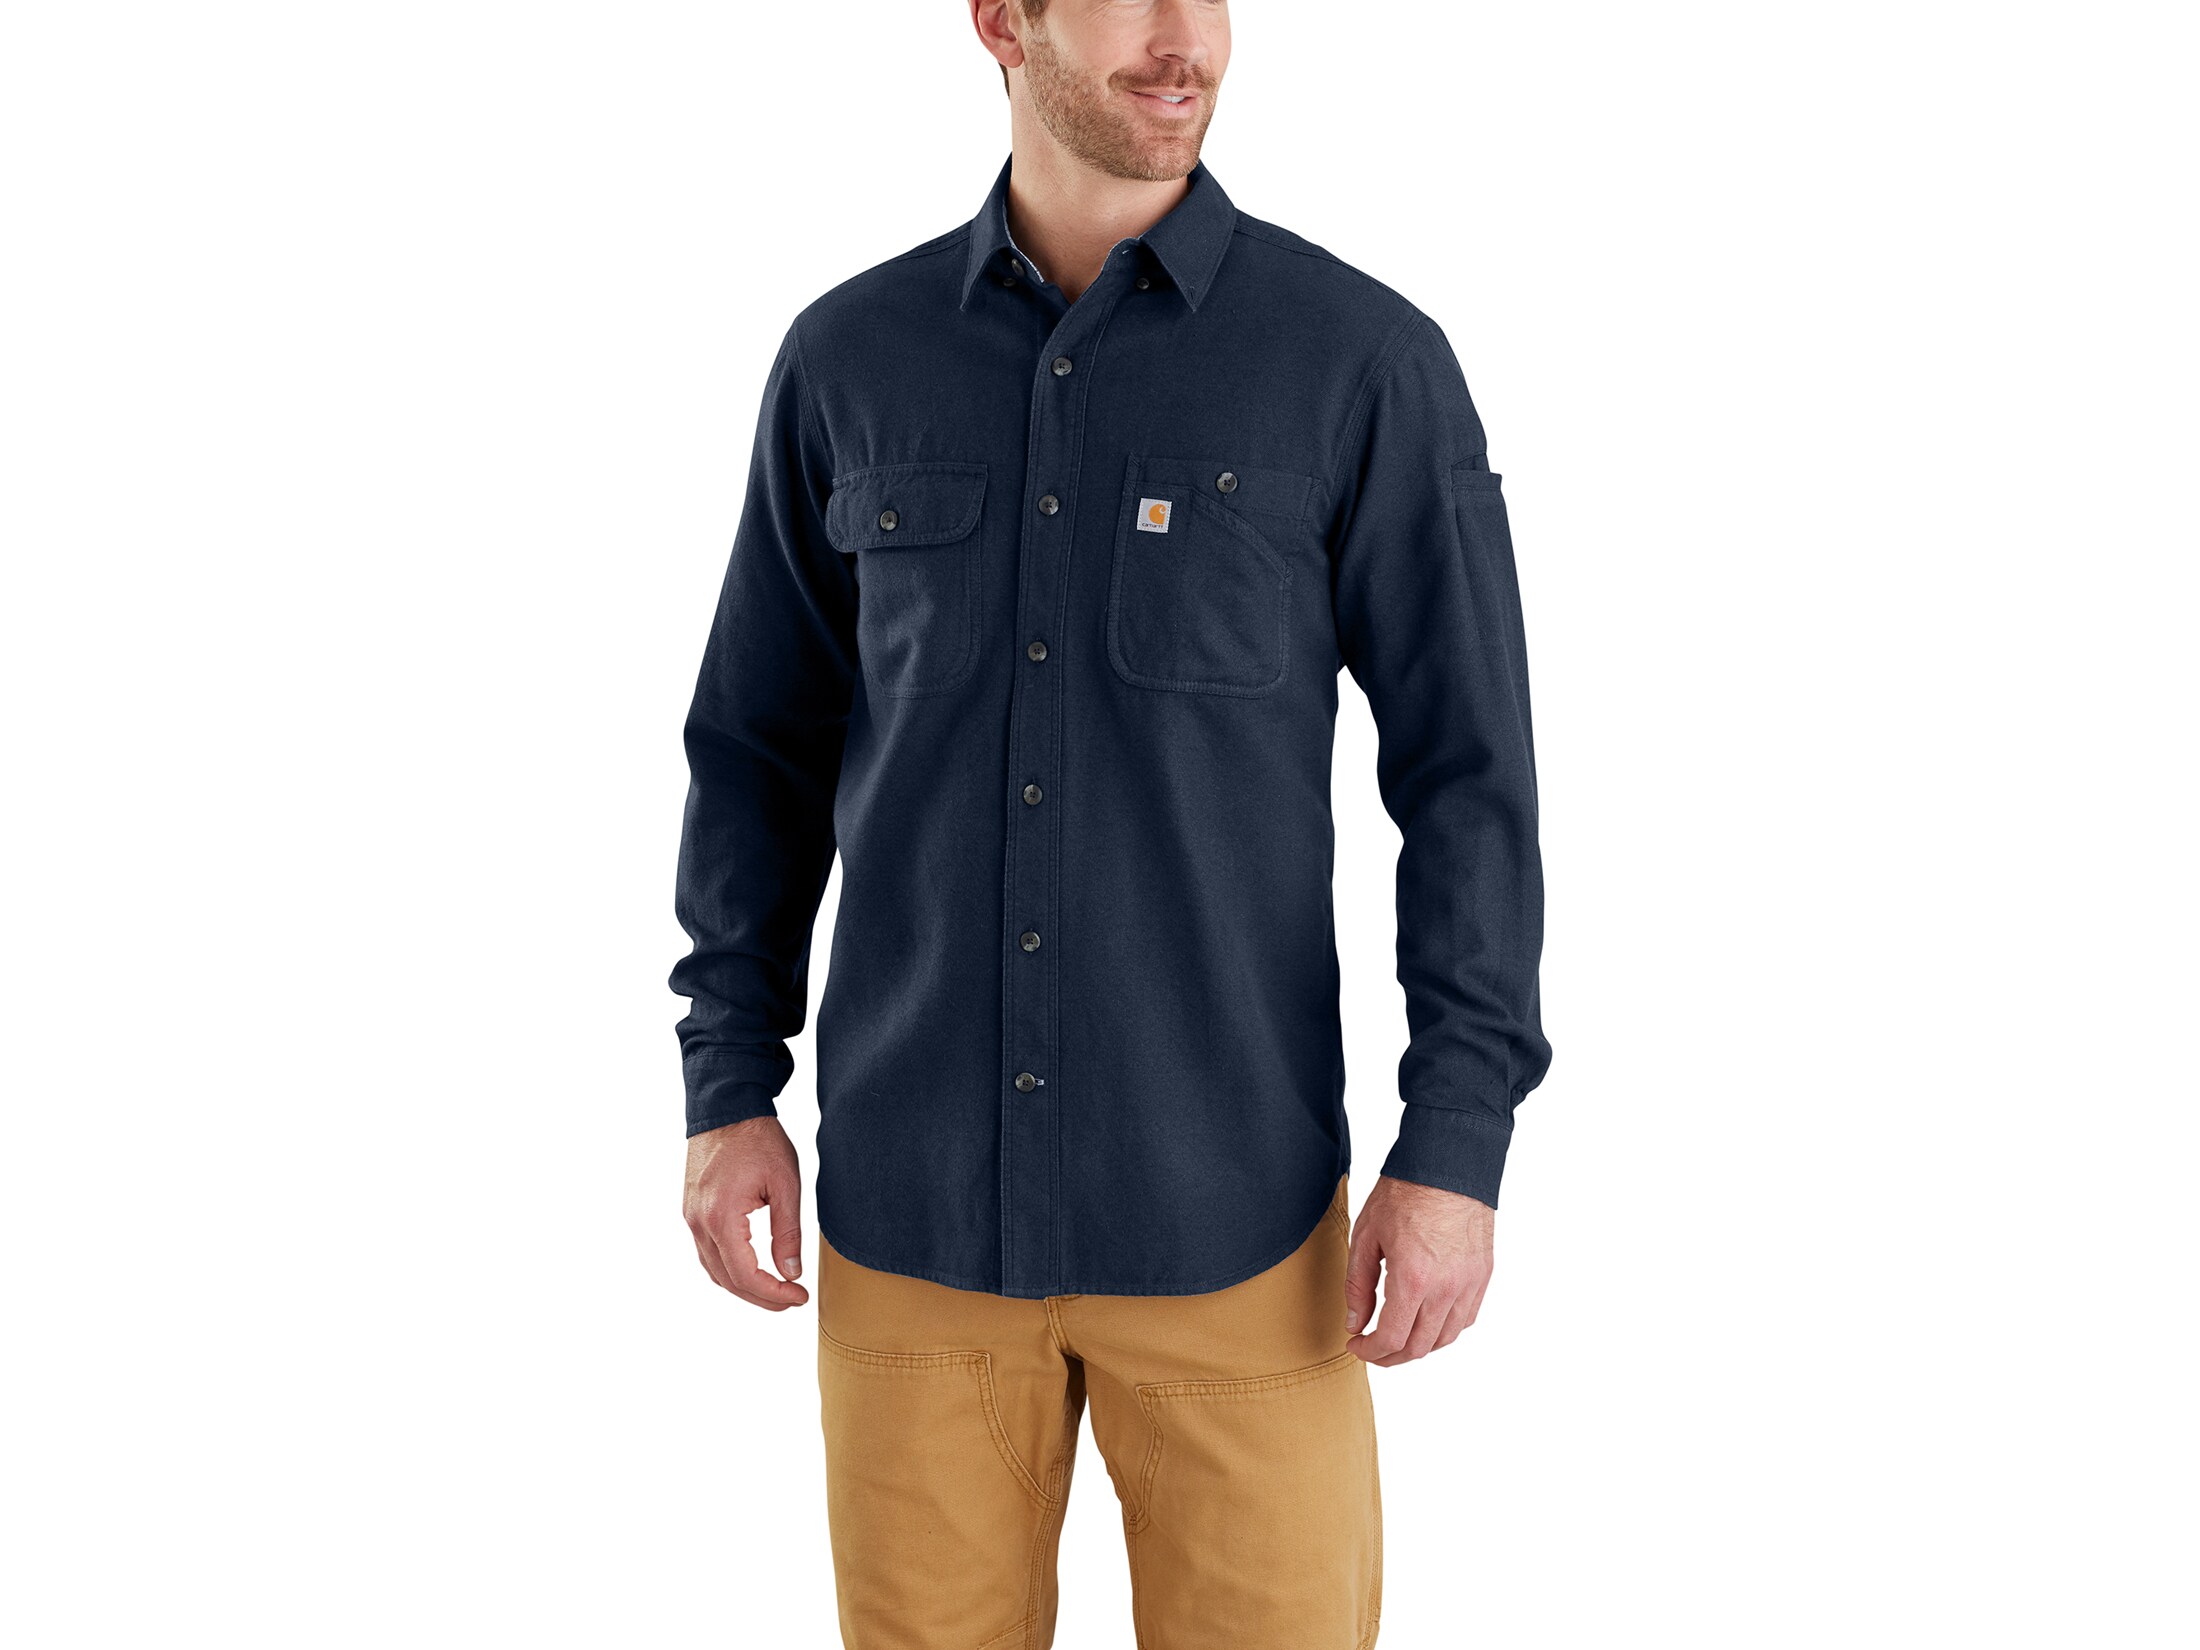 Carhartt Men's Beartooth Solid Button-Up Shirt Long Sleeve Cotton Navy